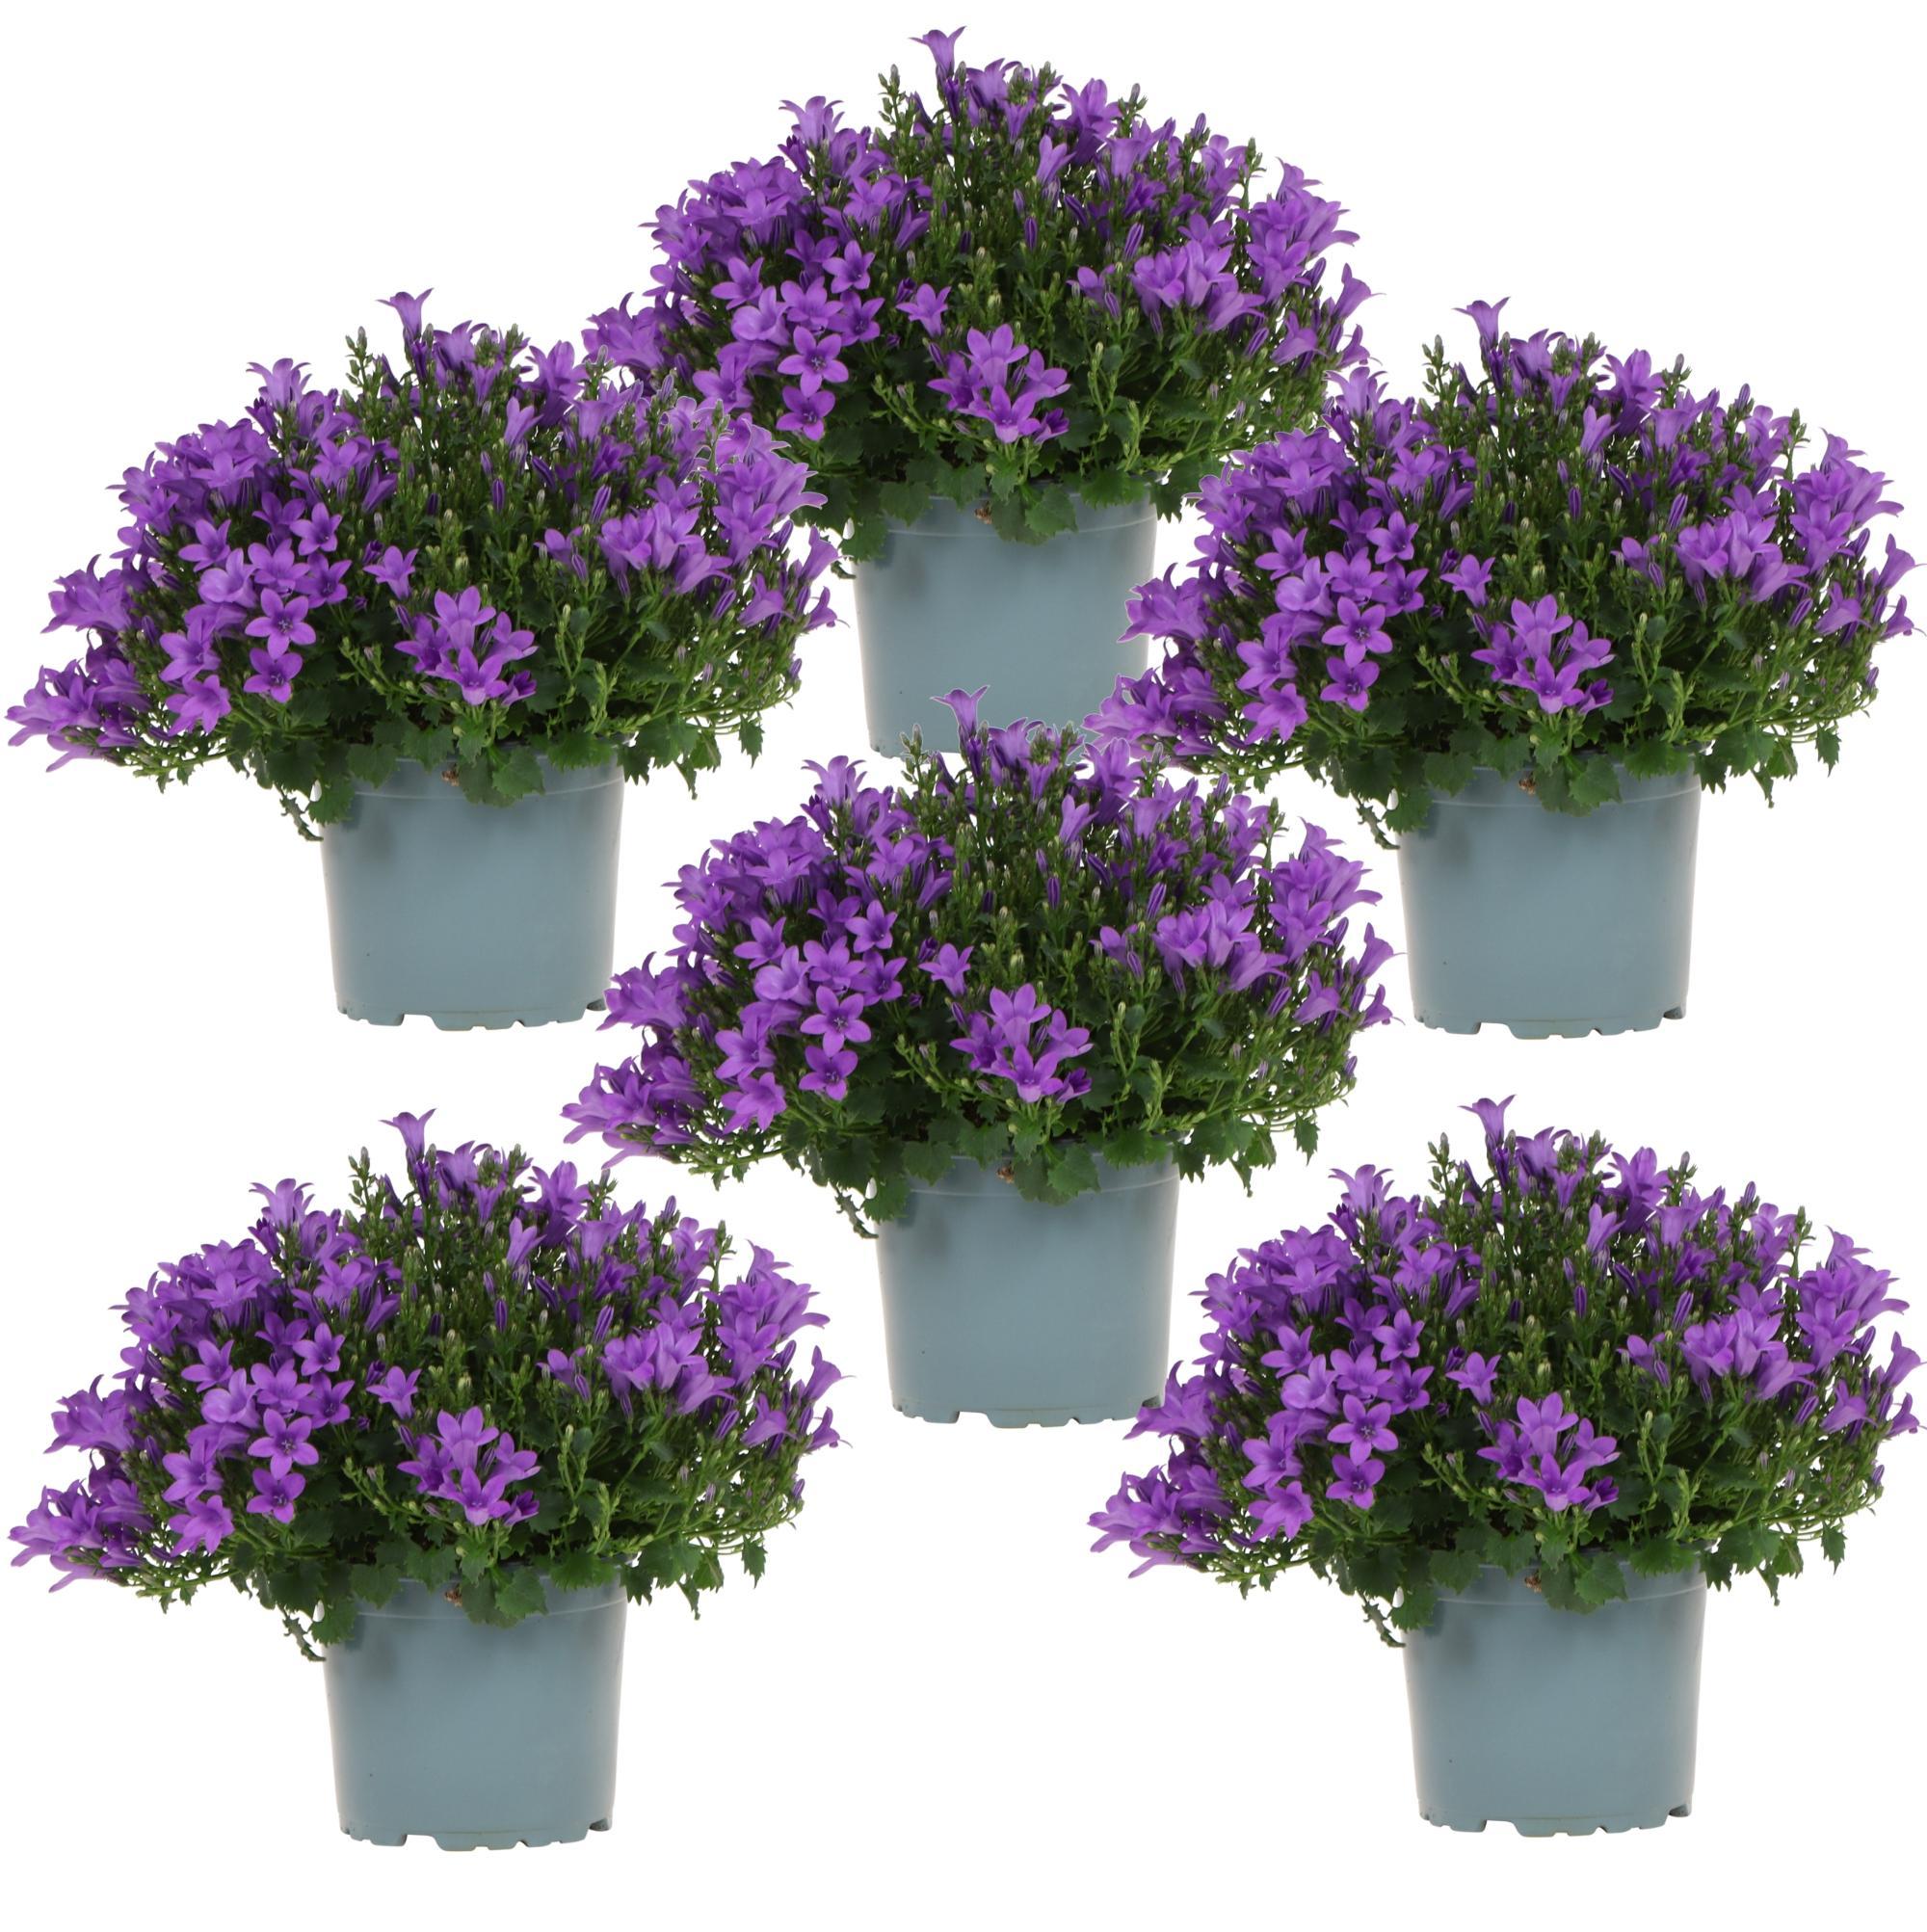 Everspring Campanula addenda - klokjesbloem purple potmaat 12cm - vaste plant - winterhard campanula addenda - klokjesbloem paars potmaat 12cm - 1m2 bodembedekker - 6 stuks - ambella purple - tuinplanten - winte